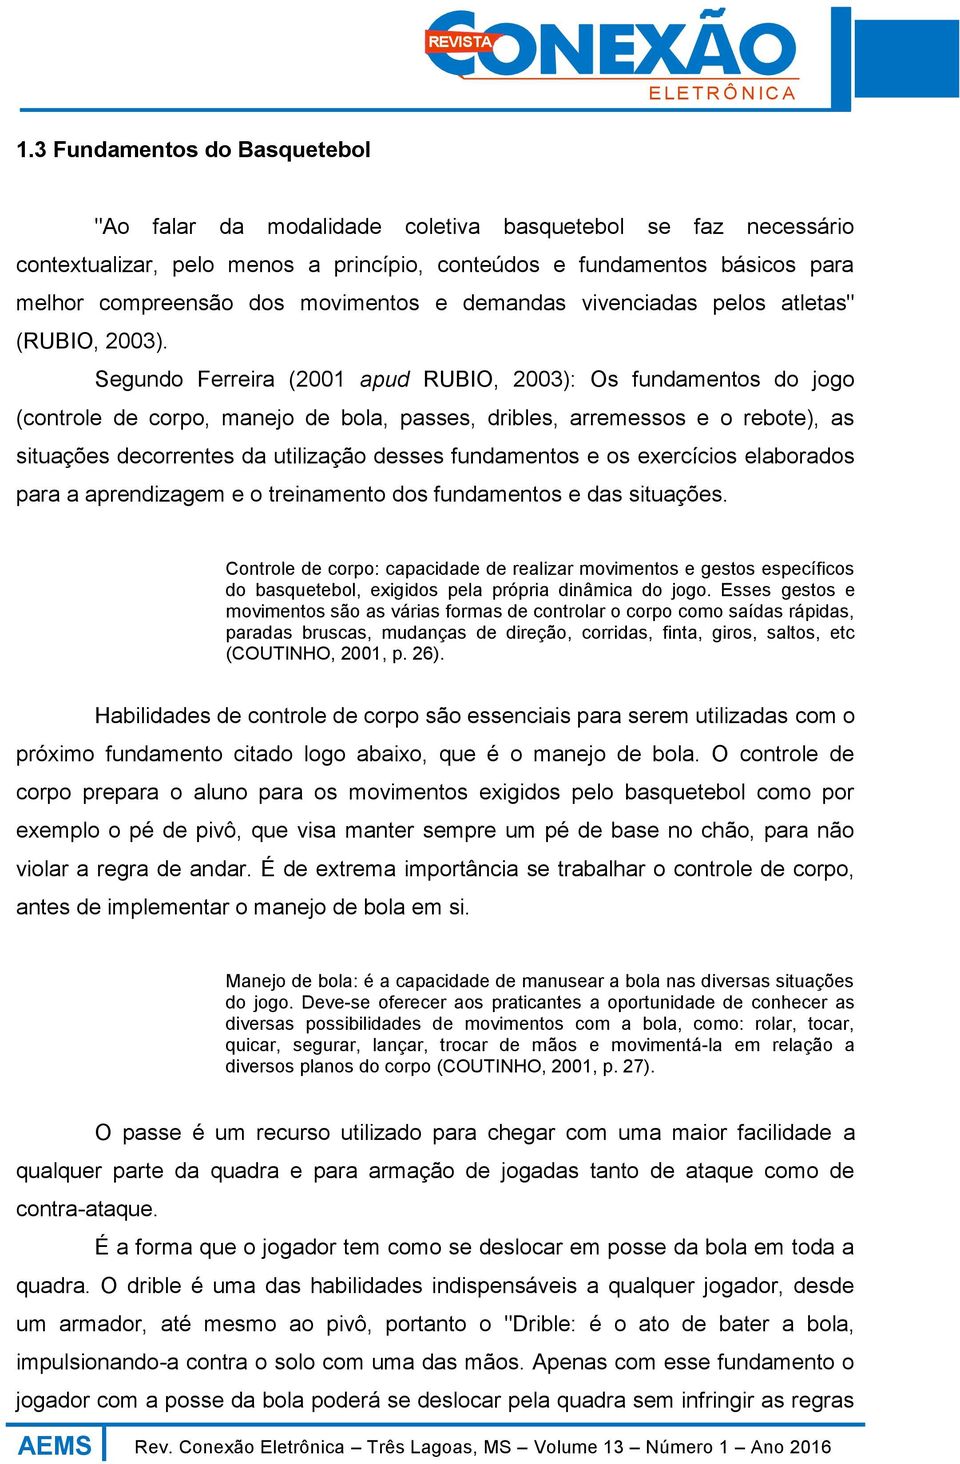 Segundo Ferreira (2001 apud RUBIO, 2003): Os fundamentos do jogo (controle de corpo, manejo de bola, passes, dribles, arremessos e o rebote), as situações decorrentes da utilização desses fundamentos